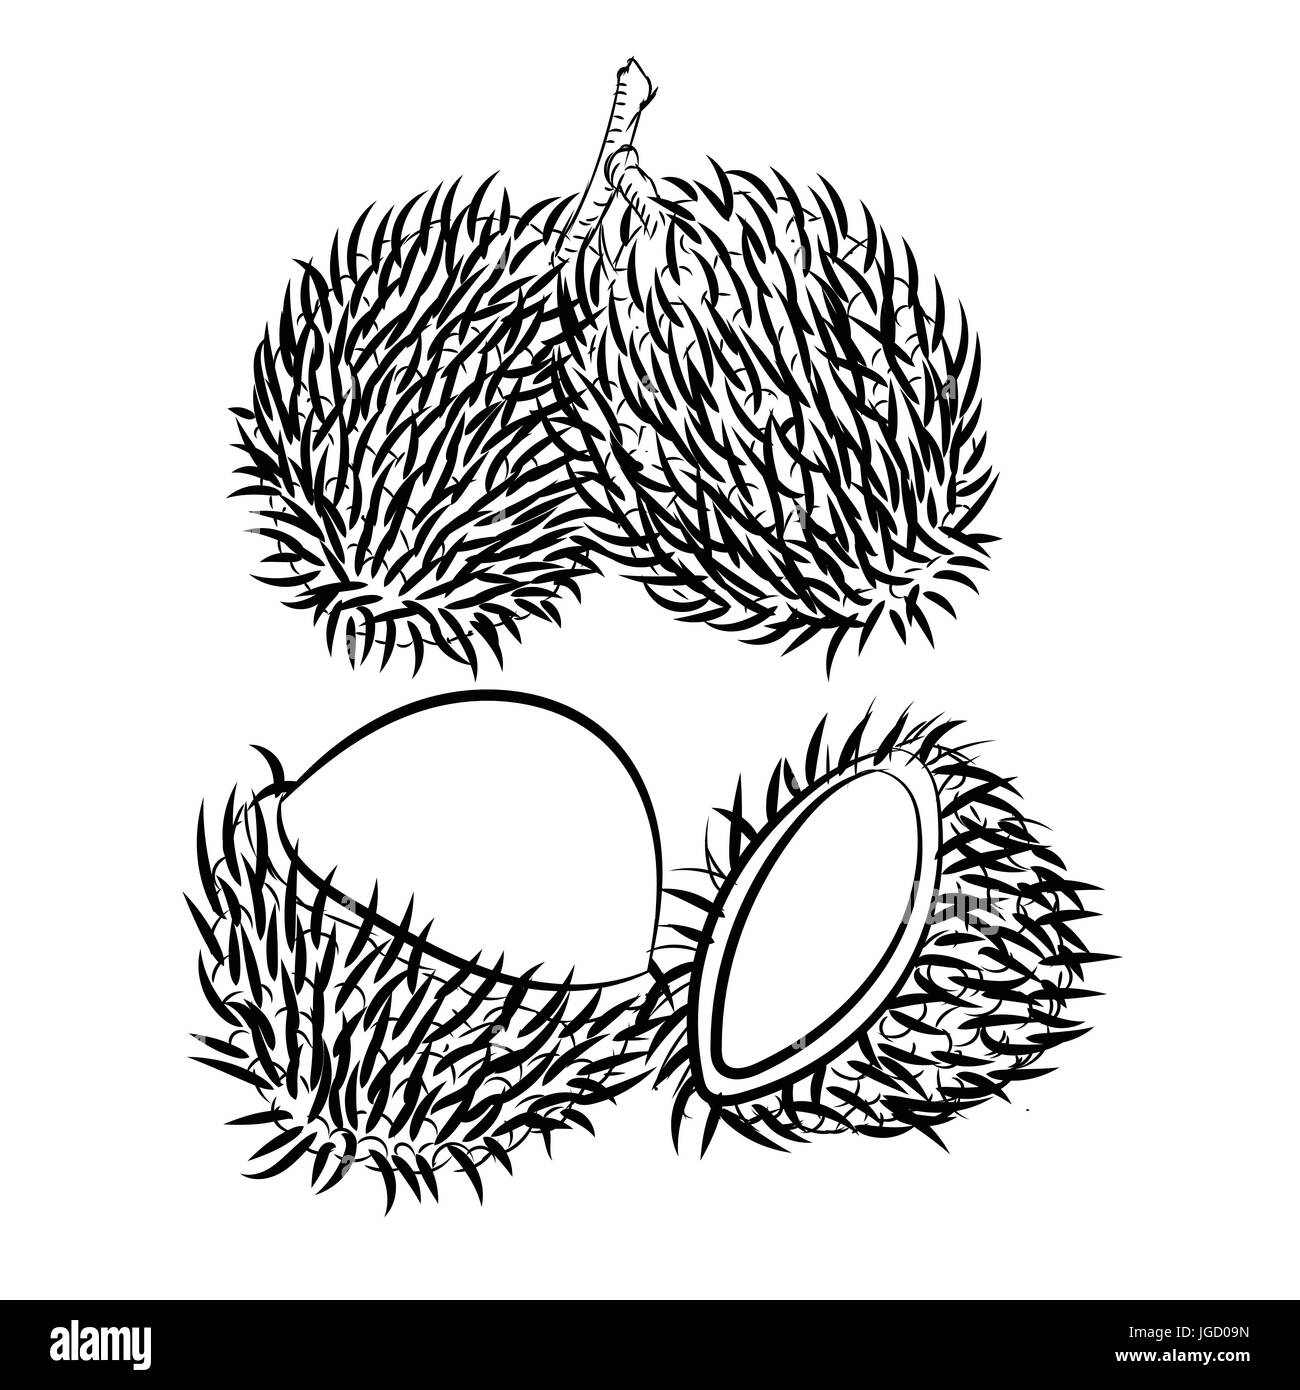 Hand gezeichnete Skizze des Rambutan isoliert, schwarz / weiß-Cartoon-Vektor-Illustration für Coloring Book - Linie gezeichnet Vektor Stock Vektor